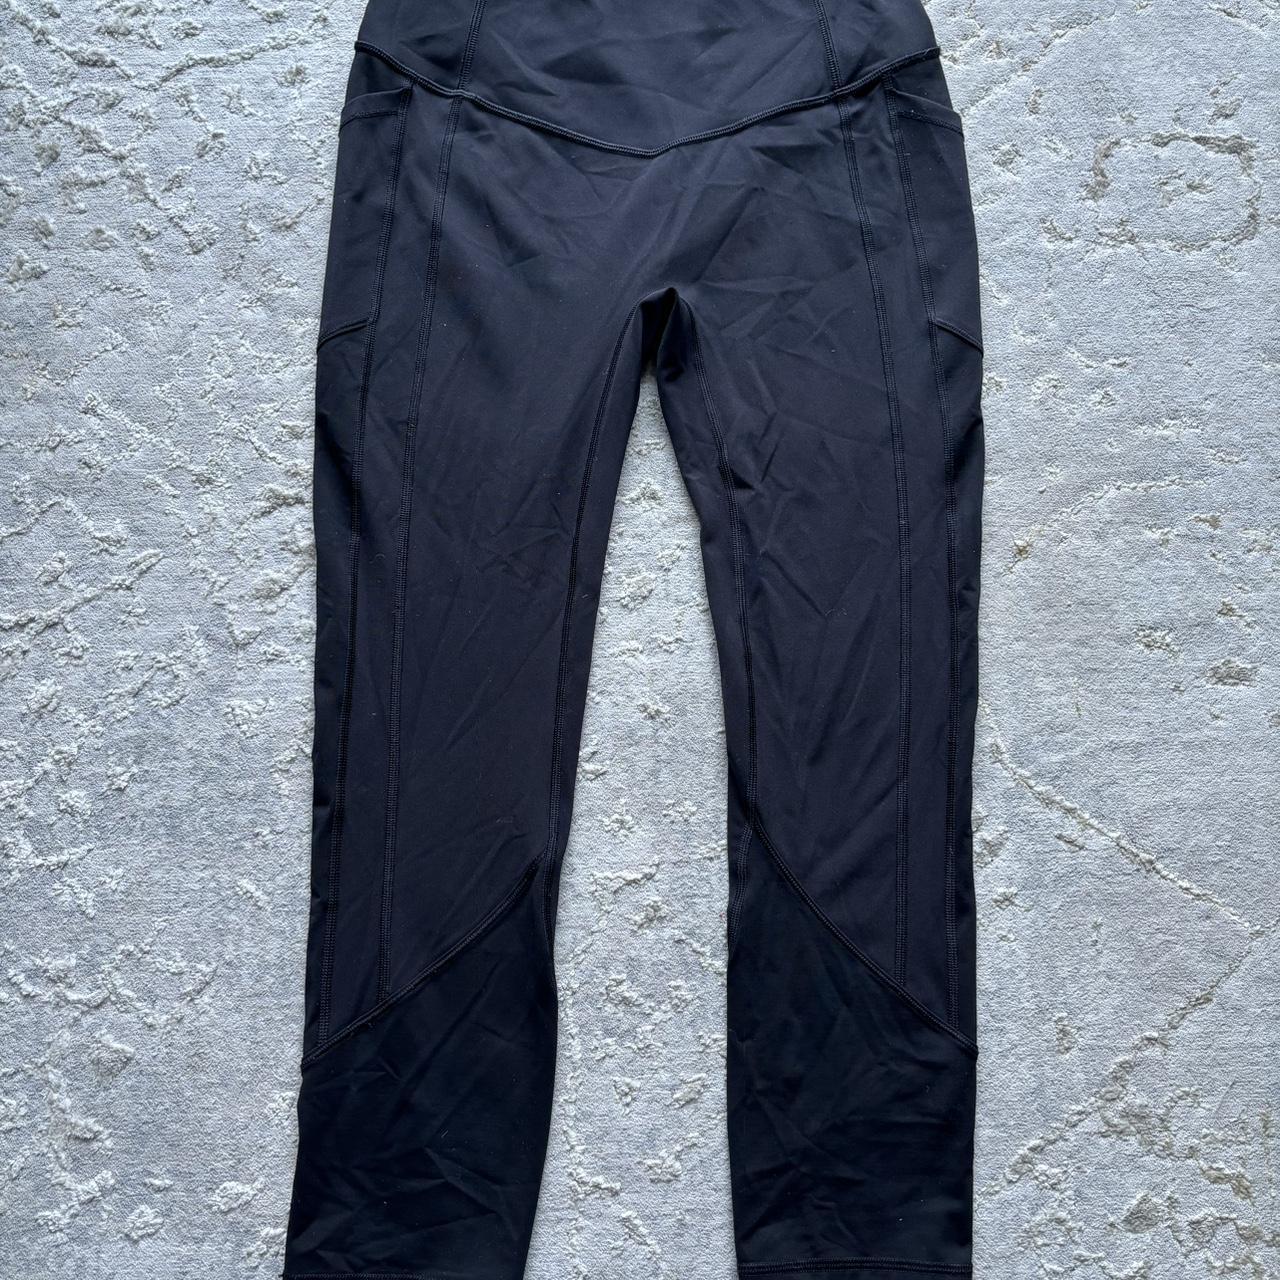 leggings with pockets. dark teal color - Depop